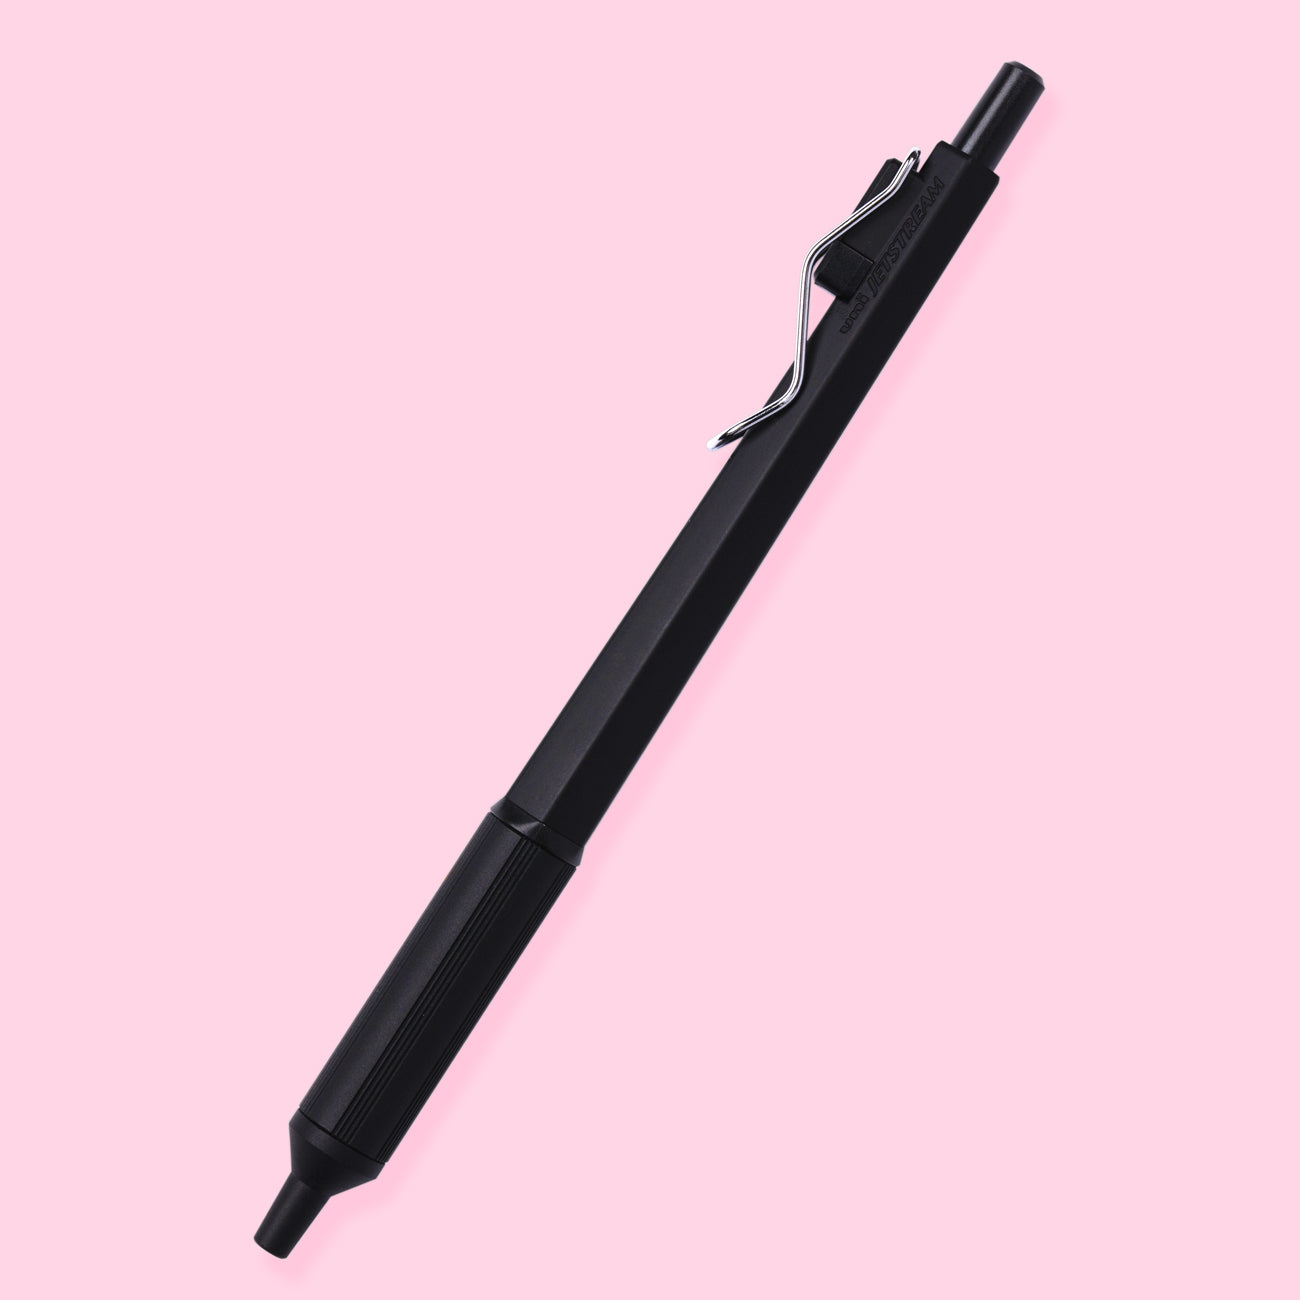 Uni Jetstream Edge Ballpoint Pen - 0.28 mm - Black Body